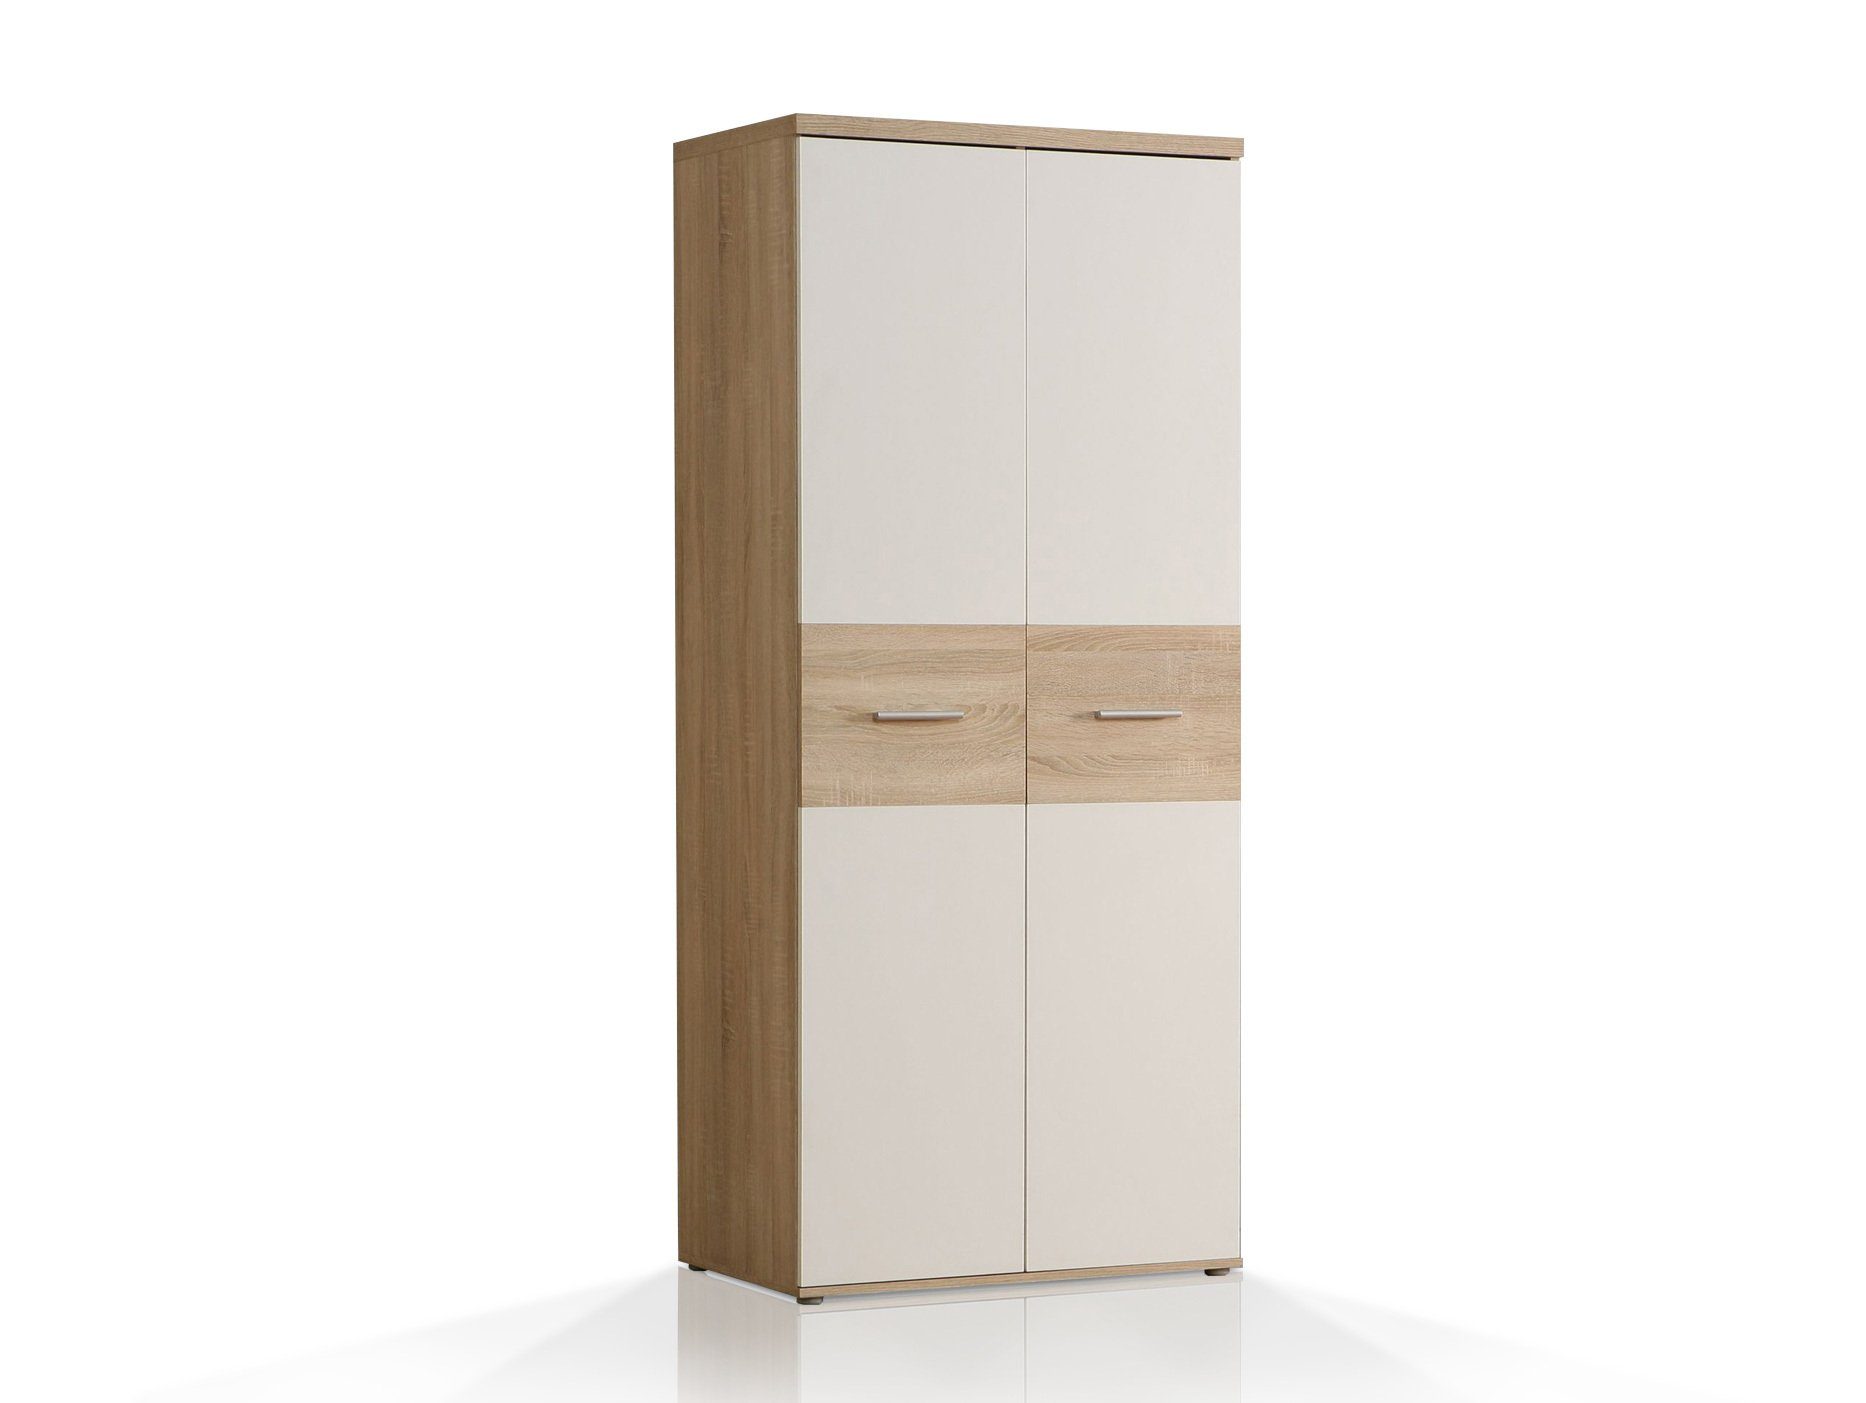 Moebel-Eins Kleiderschrank WALDY Kleiderschrank Dekorspanplatte, Türen, 2 sonomafarbig/weiss Eiche Material mit